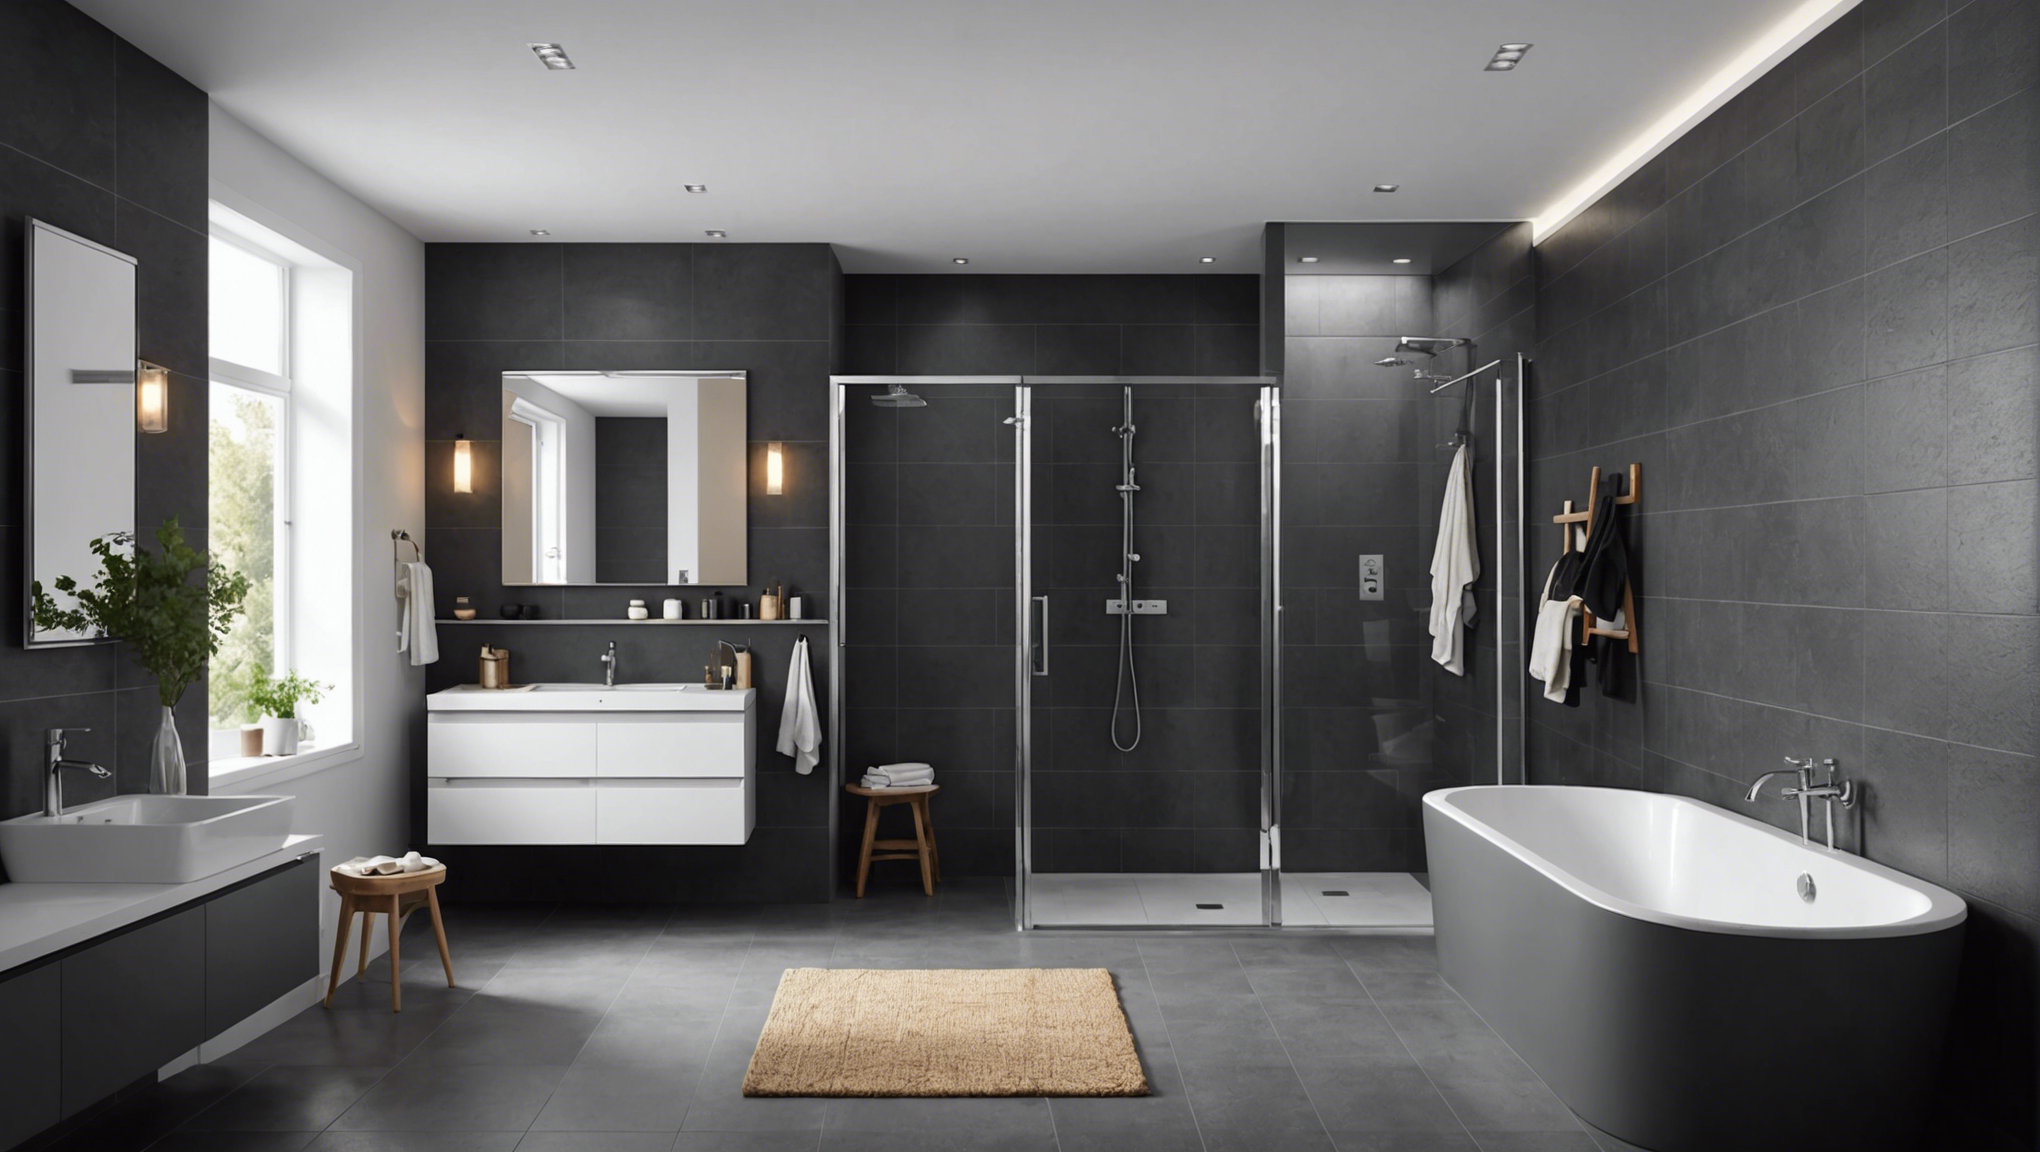 découvrez comment choisir le revêtement de sol idéal pour une salle de bain moderne et pratique avec nos conseils et astuces.